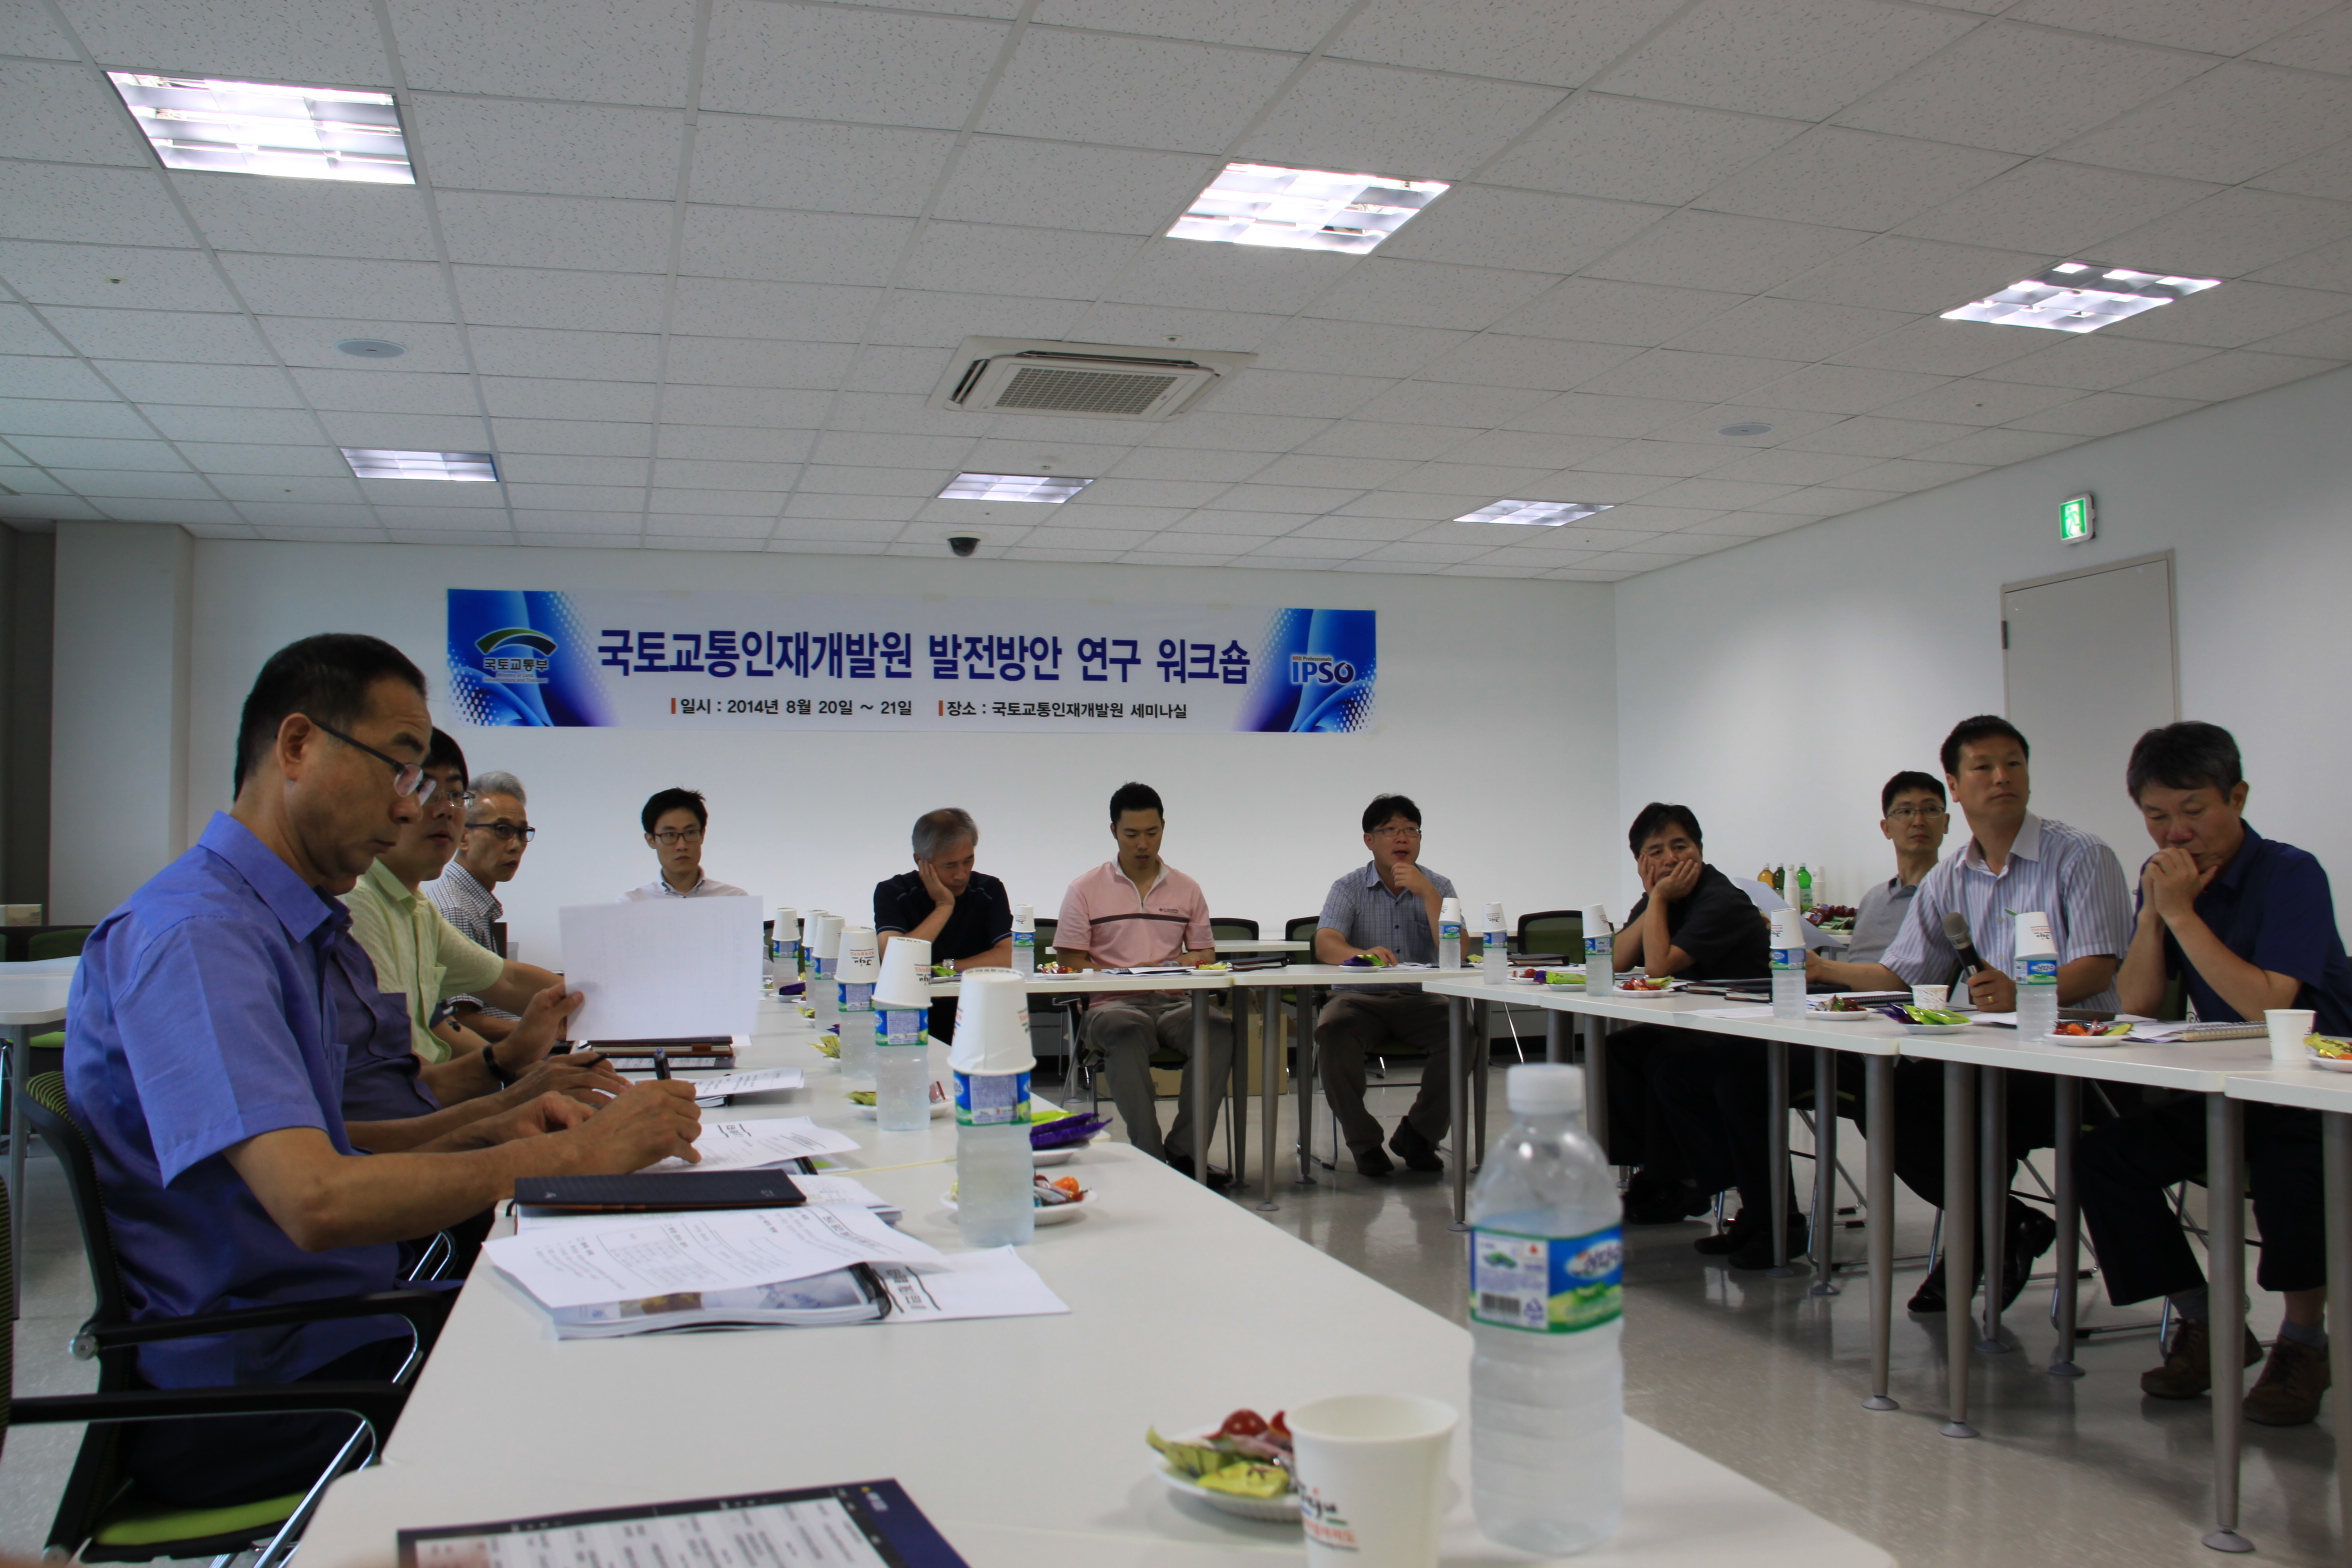 인재개발원 발전방안 워크숍(2014.8.20)